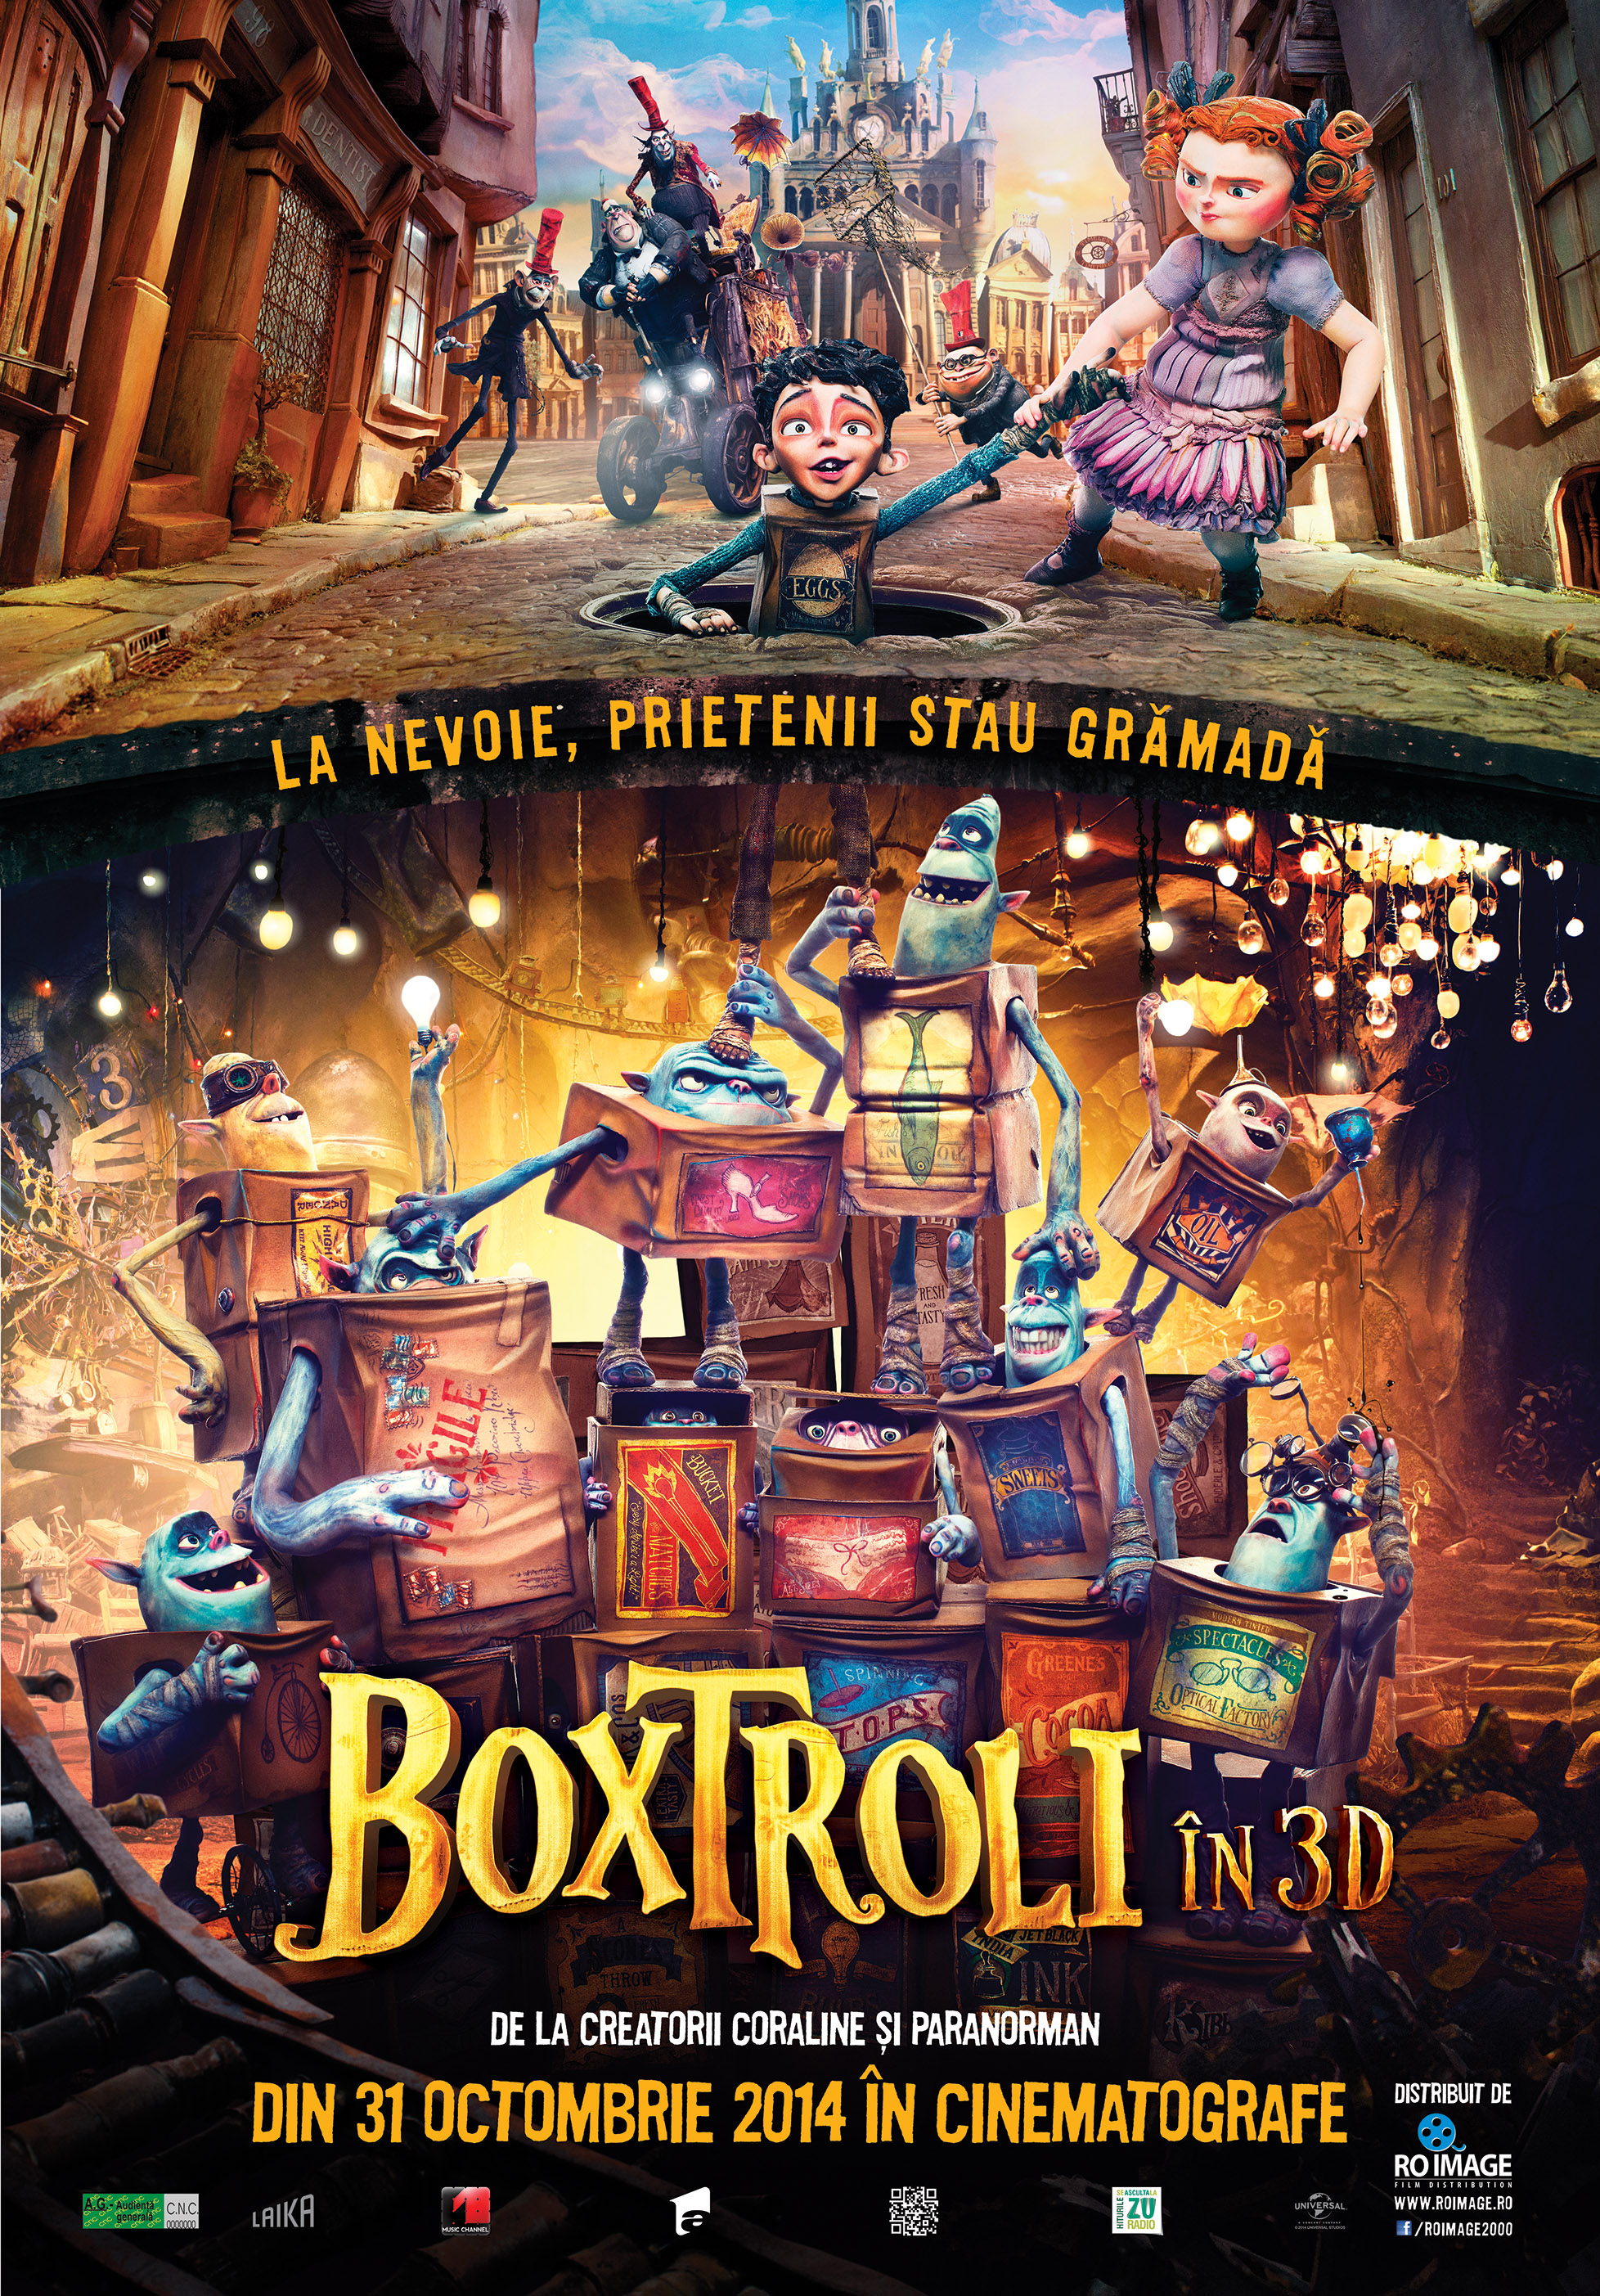 Boxtroli 3D (Dublat) / Boxtrolls 3D (Dubbed)